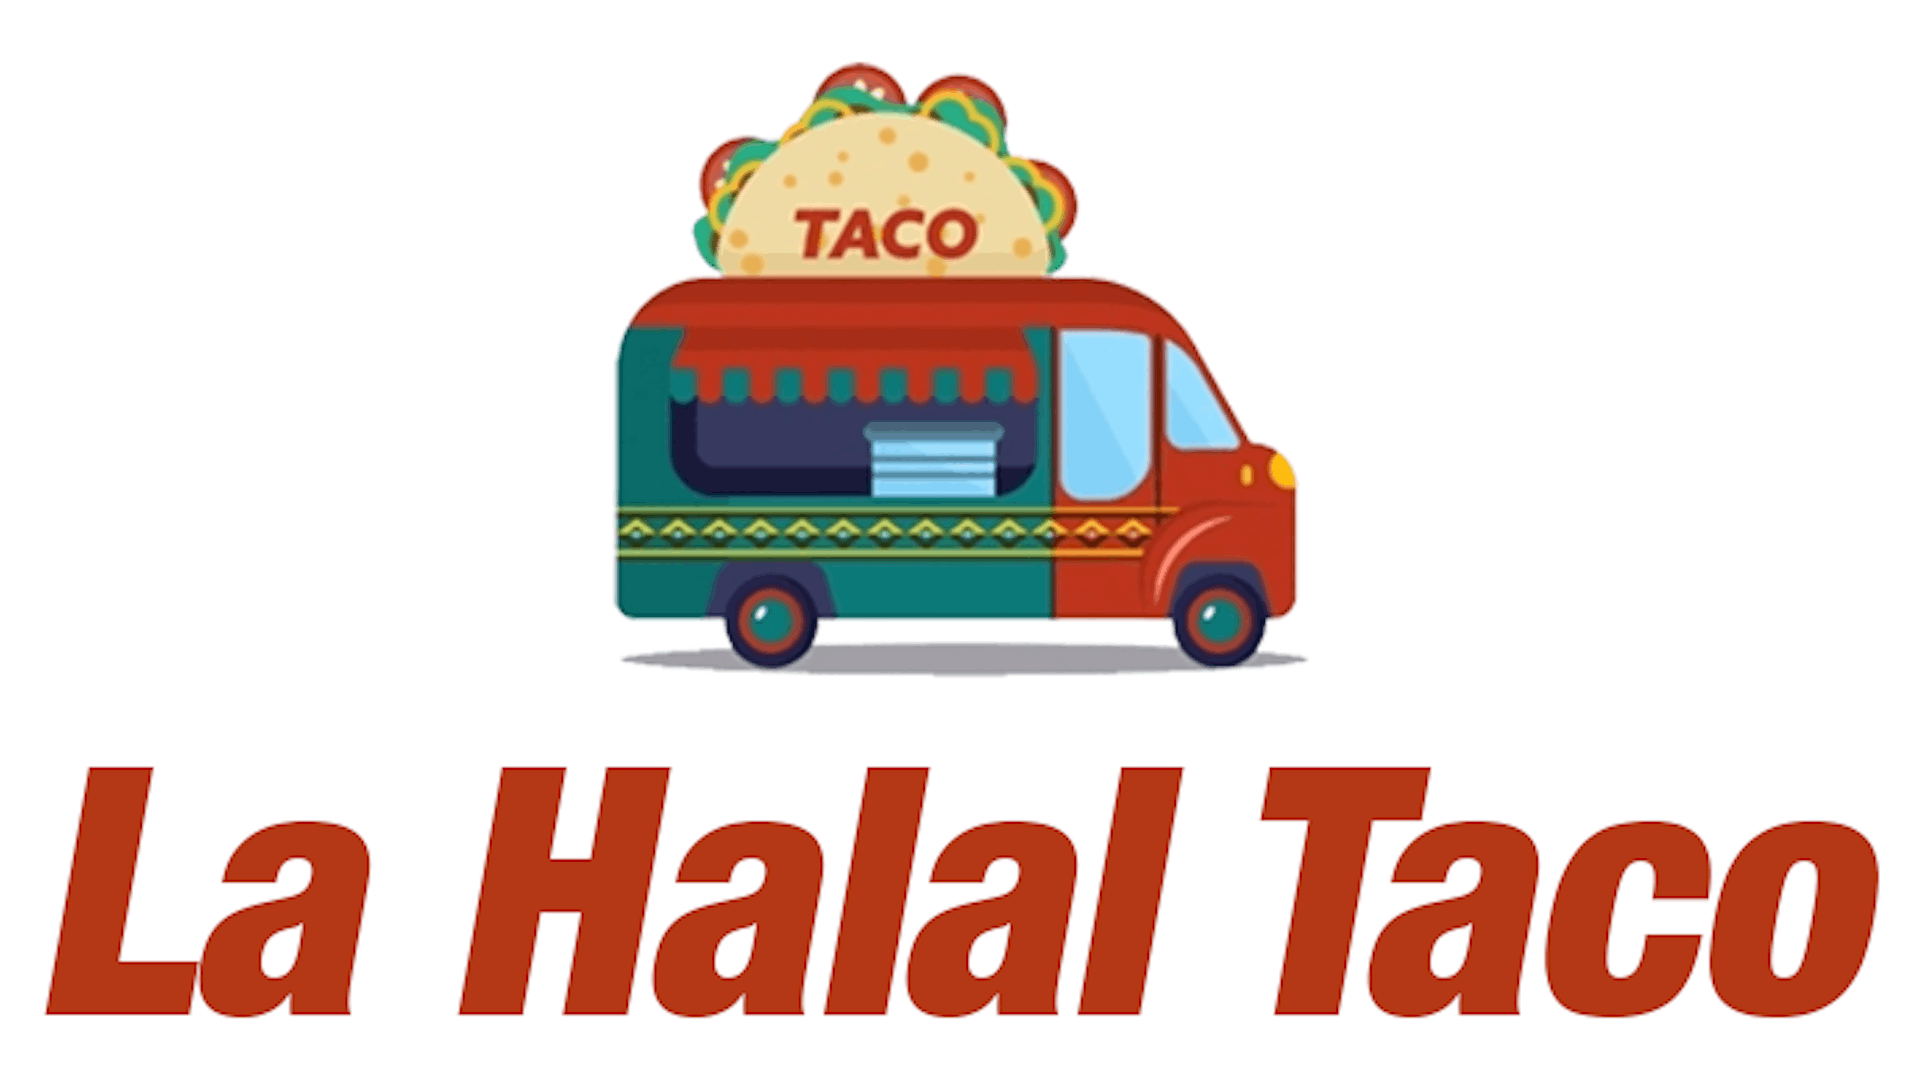 La Halal Taco